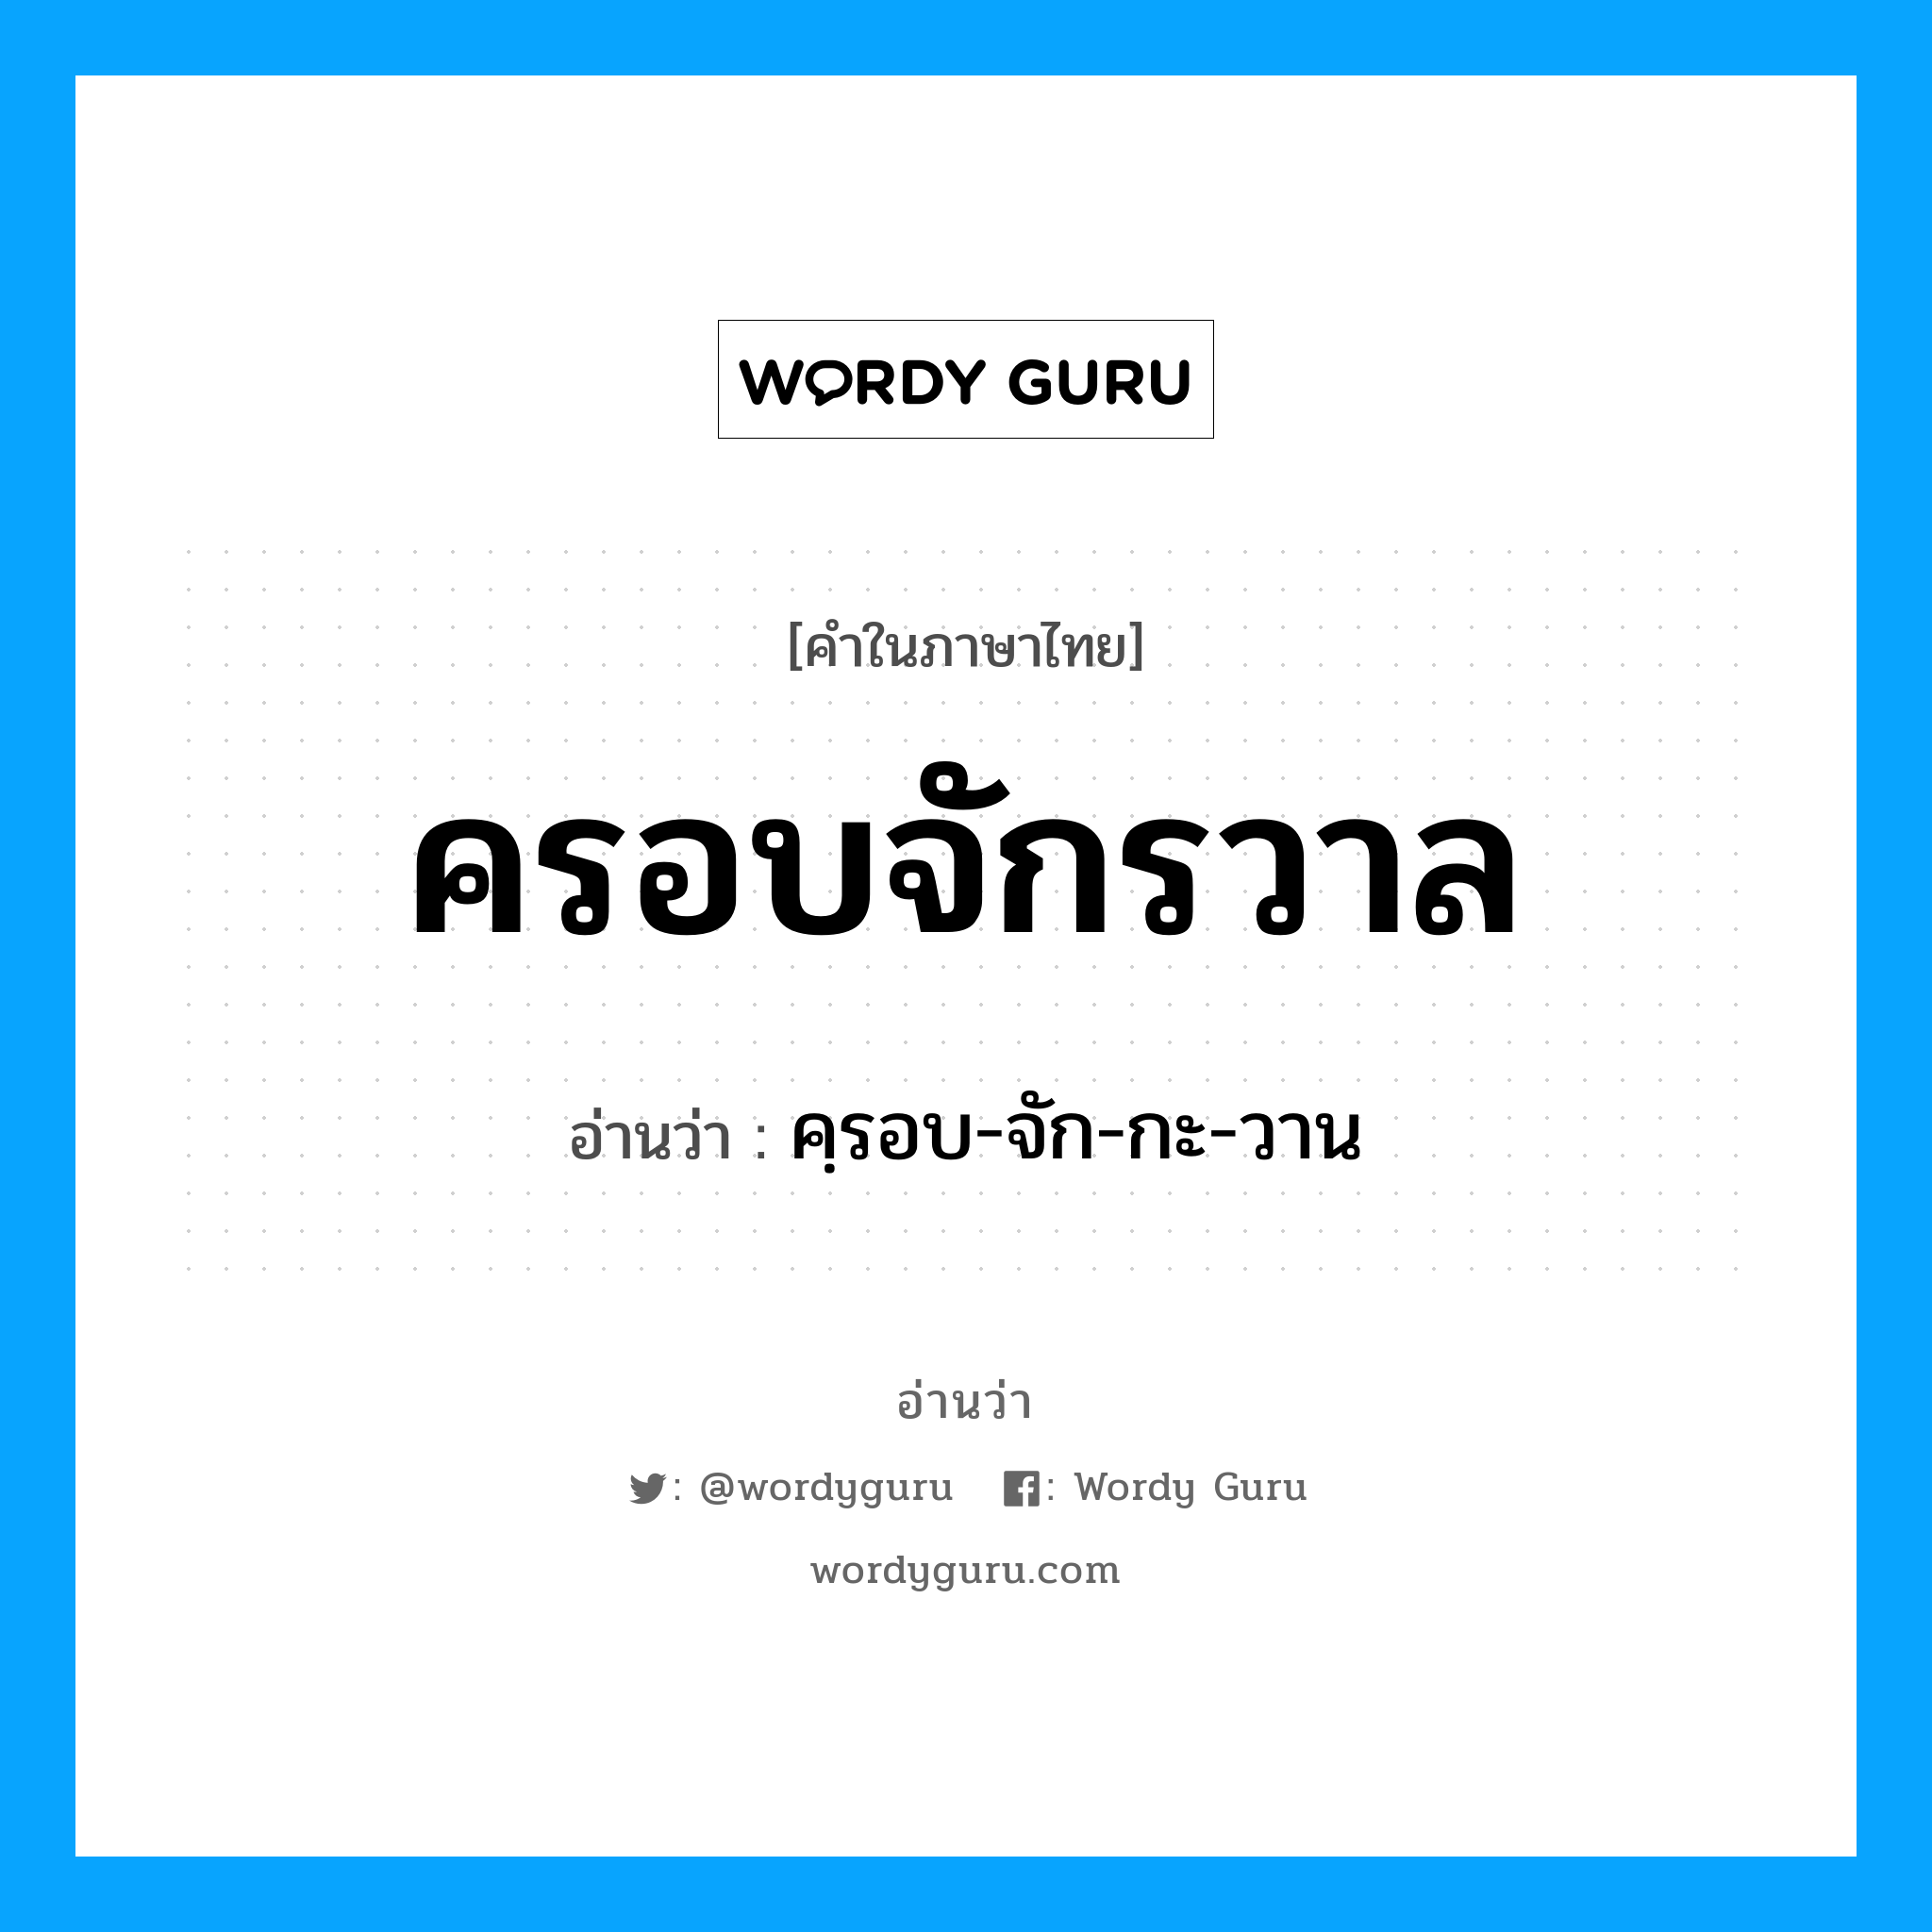 คฺรอบ-จัก-กะ-วาน เป็นคำอ่านของคำไหน?, คำในภาษาไทย คฺรอบ-จัก-กะ-วาน อ่านว่า ครอบจักรวาล